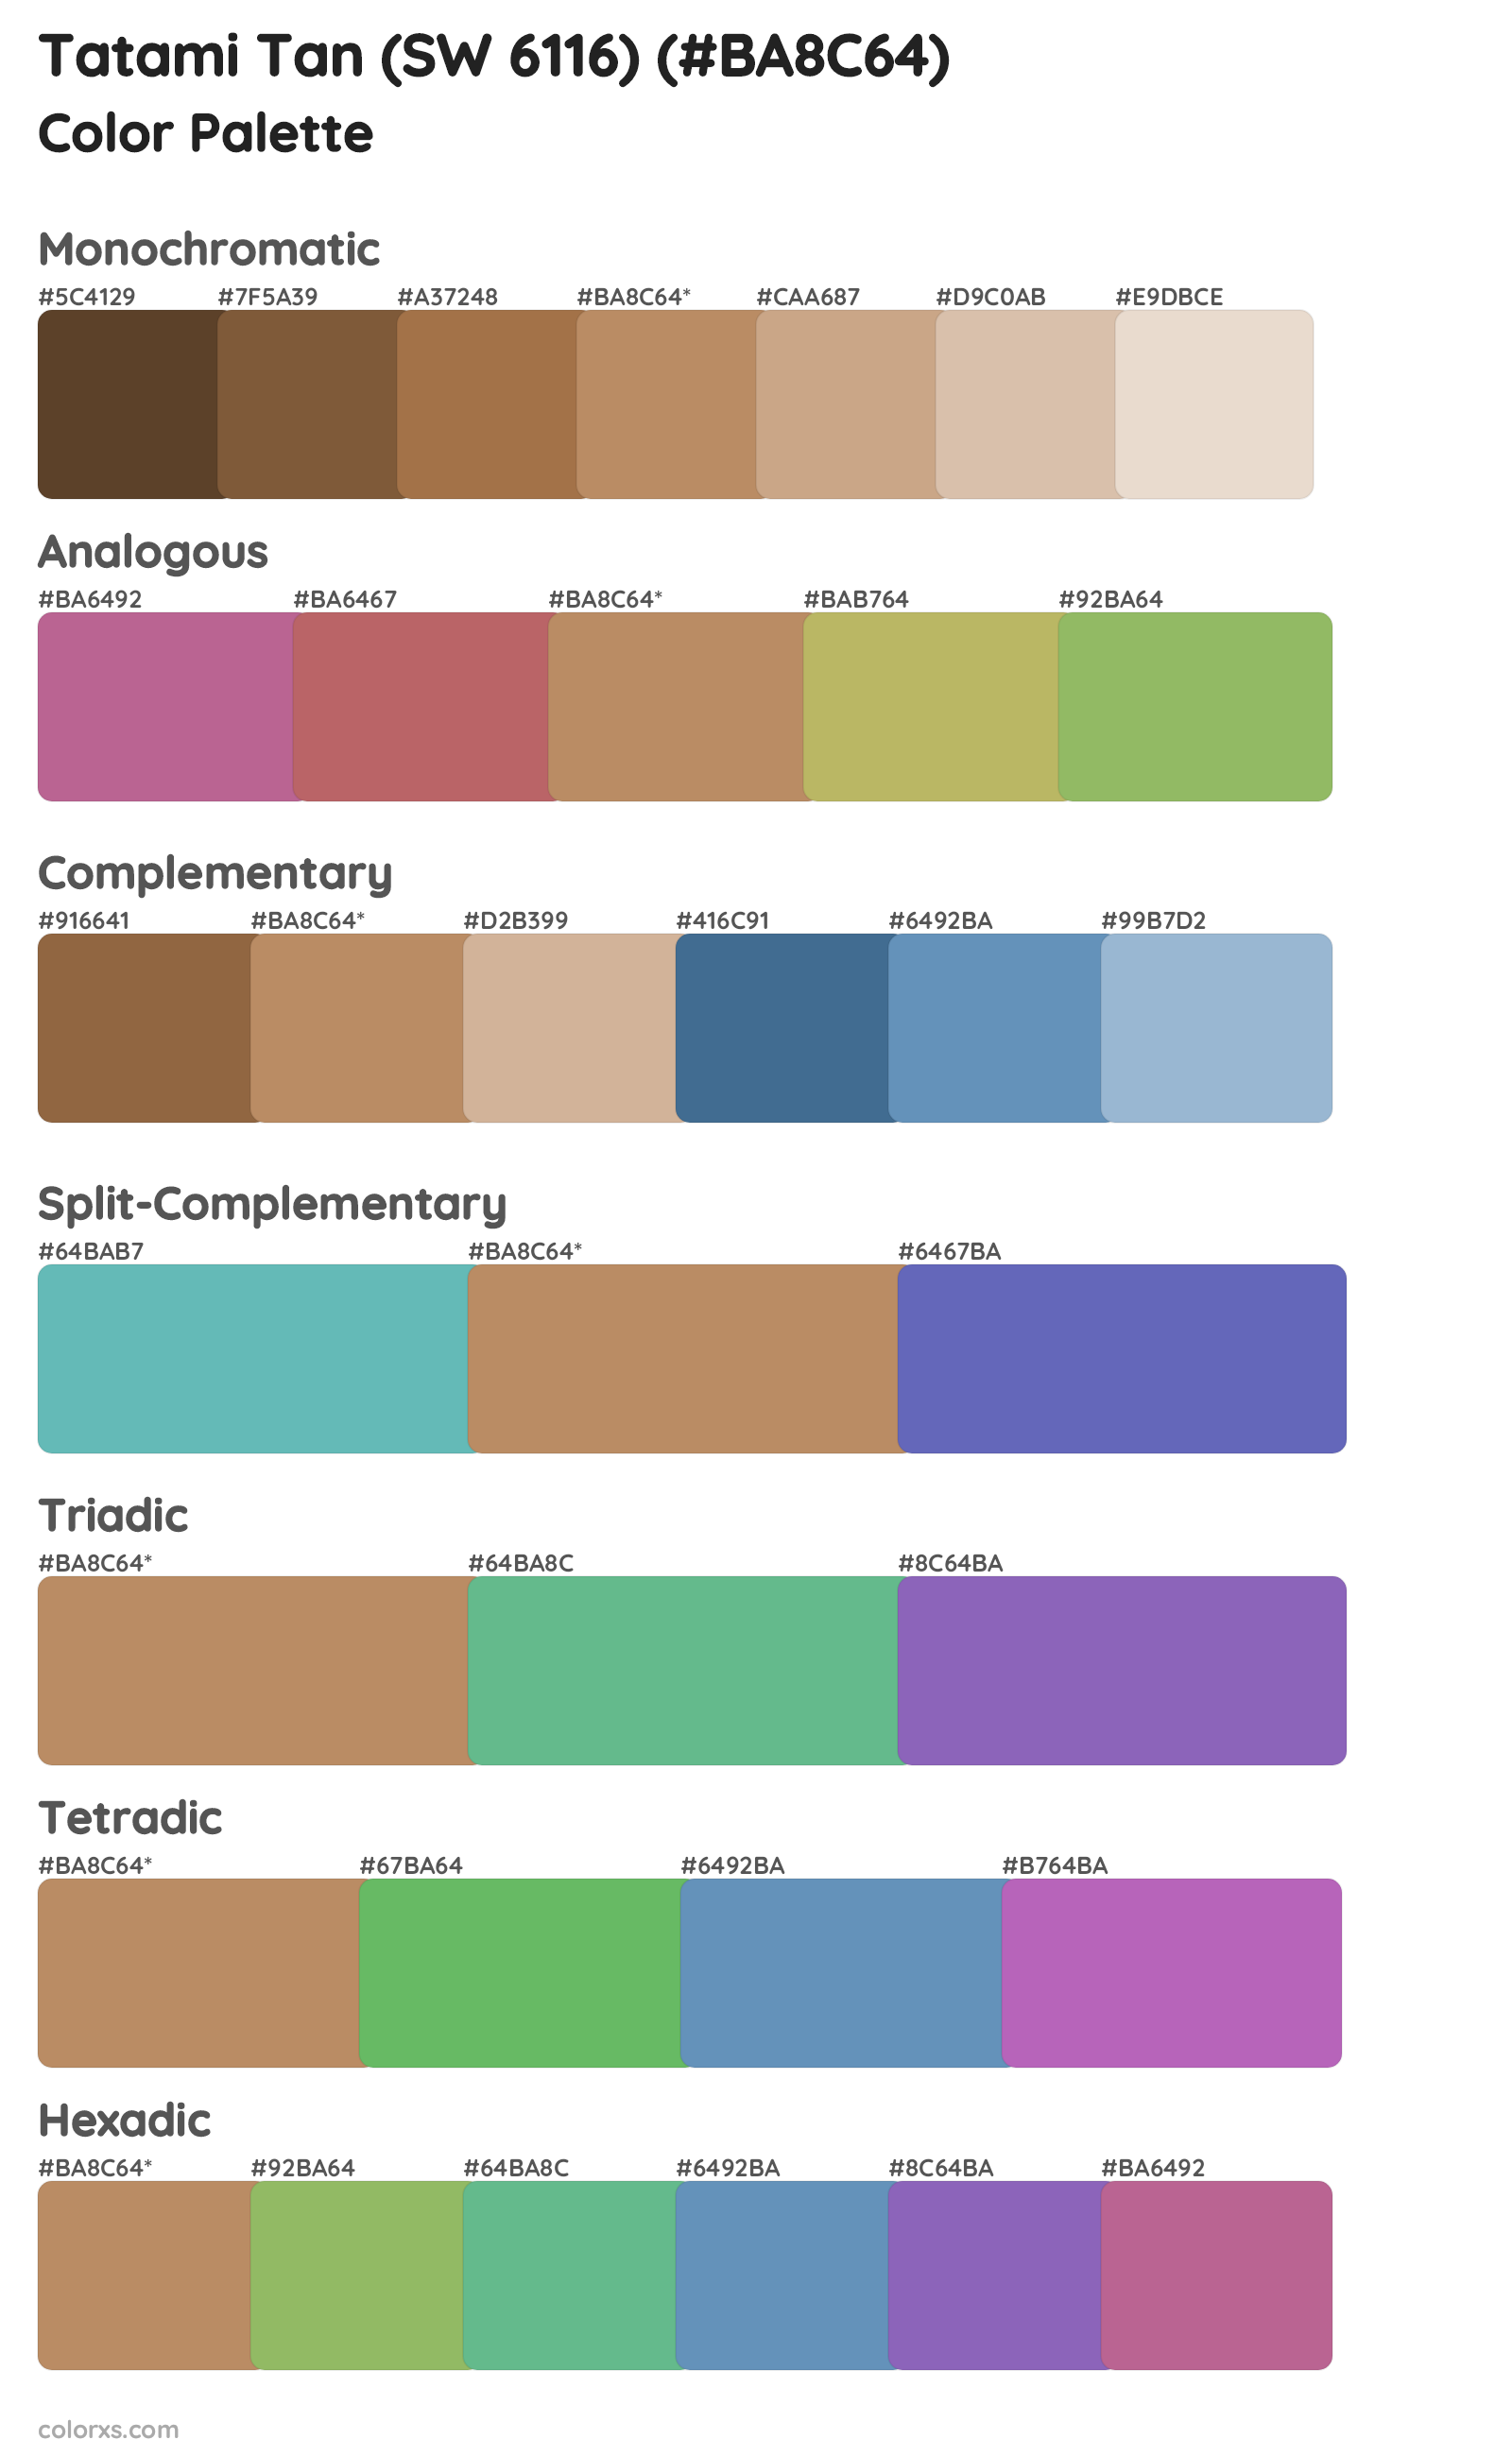 Tatami Tan (SW 6116) Color Scheme Palettes